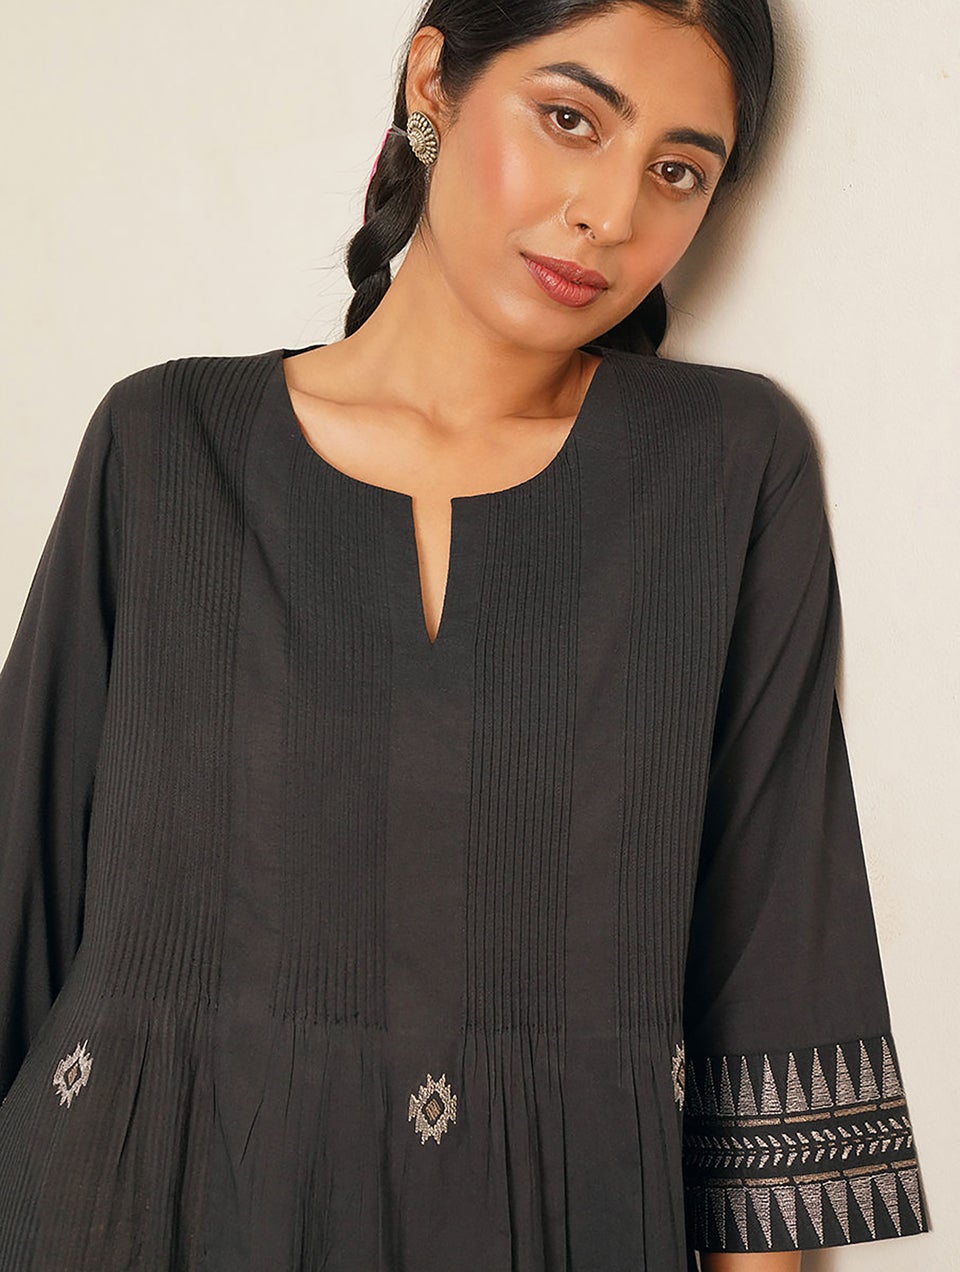 Women Black Embroidered Cotton Kurta Dress - XS